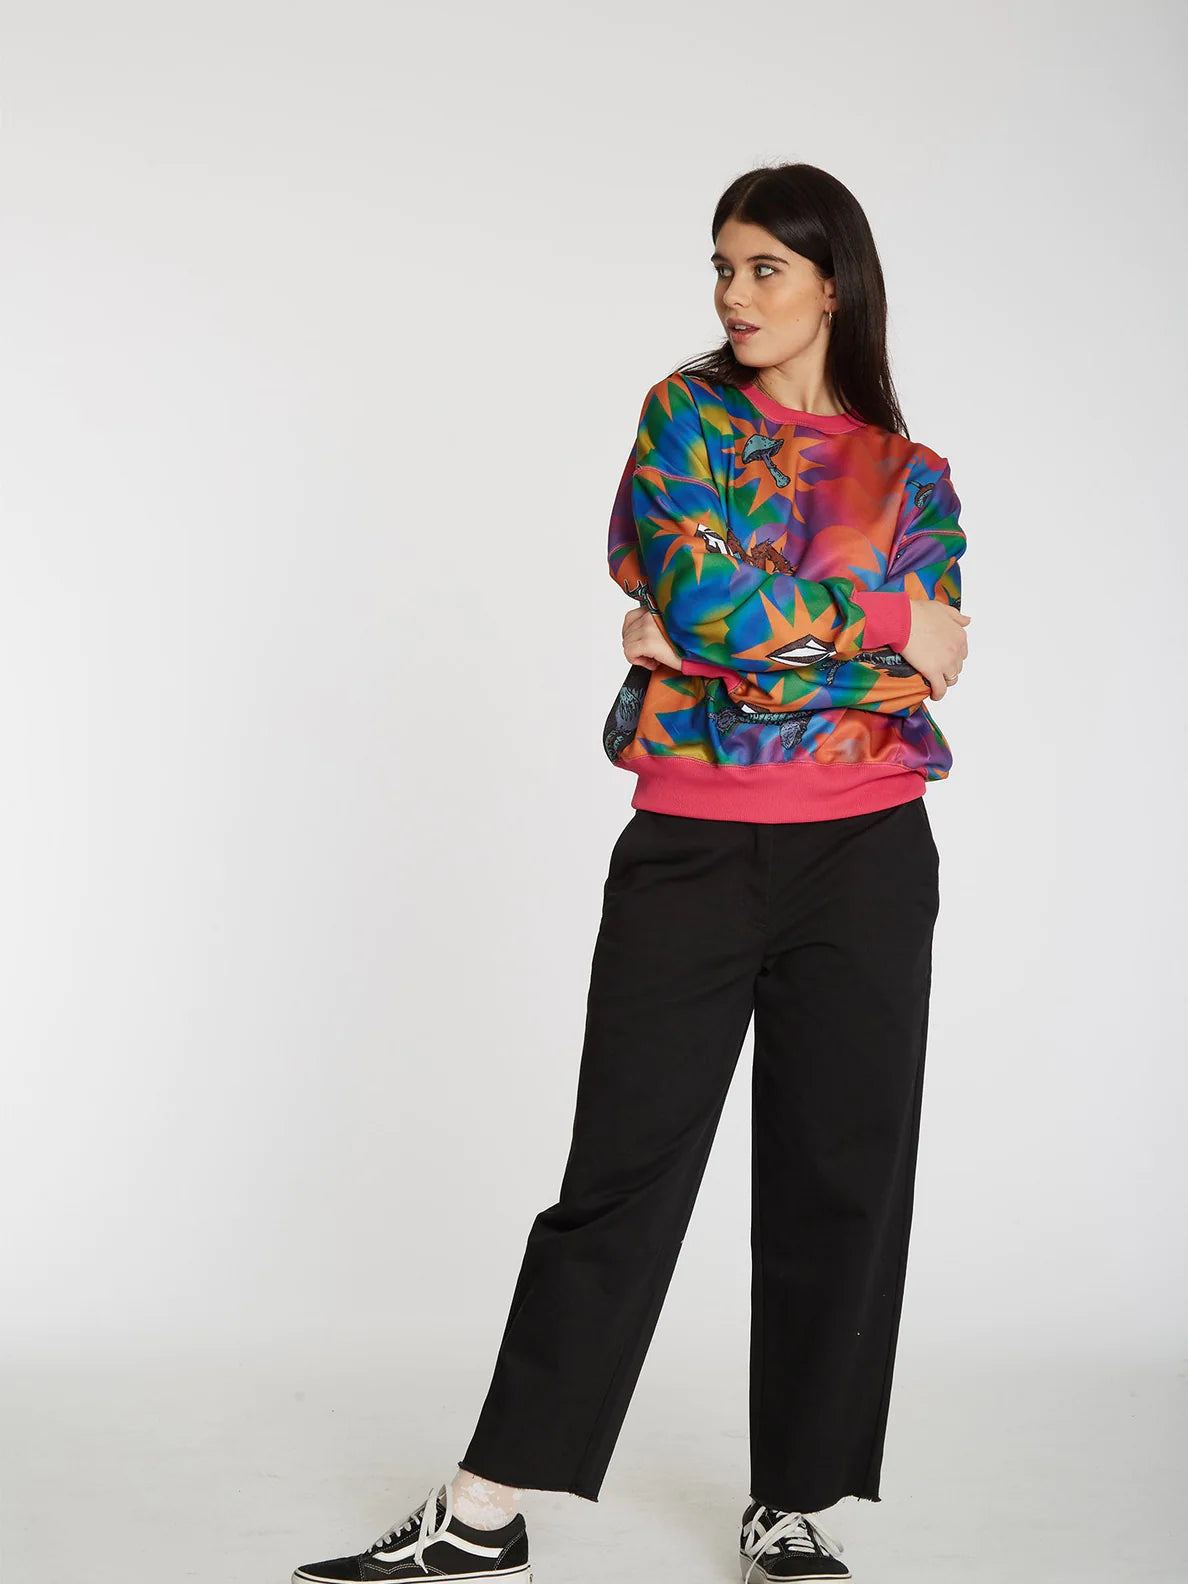 Volcom Chrissie Abbott x French Crew Mädchen Sweatshirt Multi | Damen-Sweatshirts | Meistverkaufte Produkte | Neue Produkte | Neueste Produkte | Sammlung_Zalando | Volcom-Shop | surfdevils.com